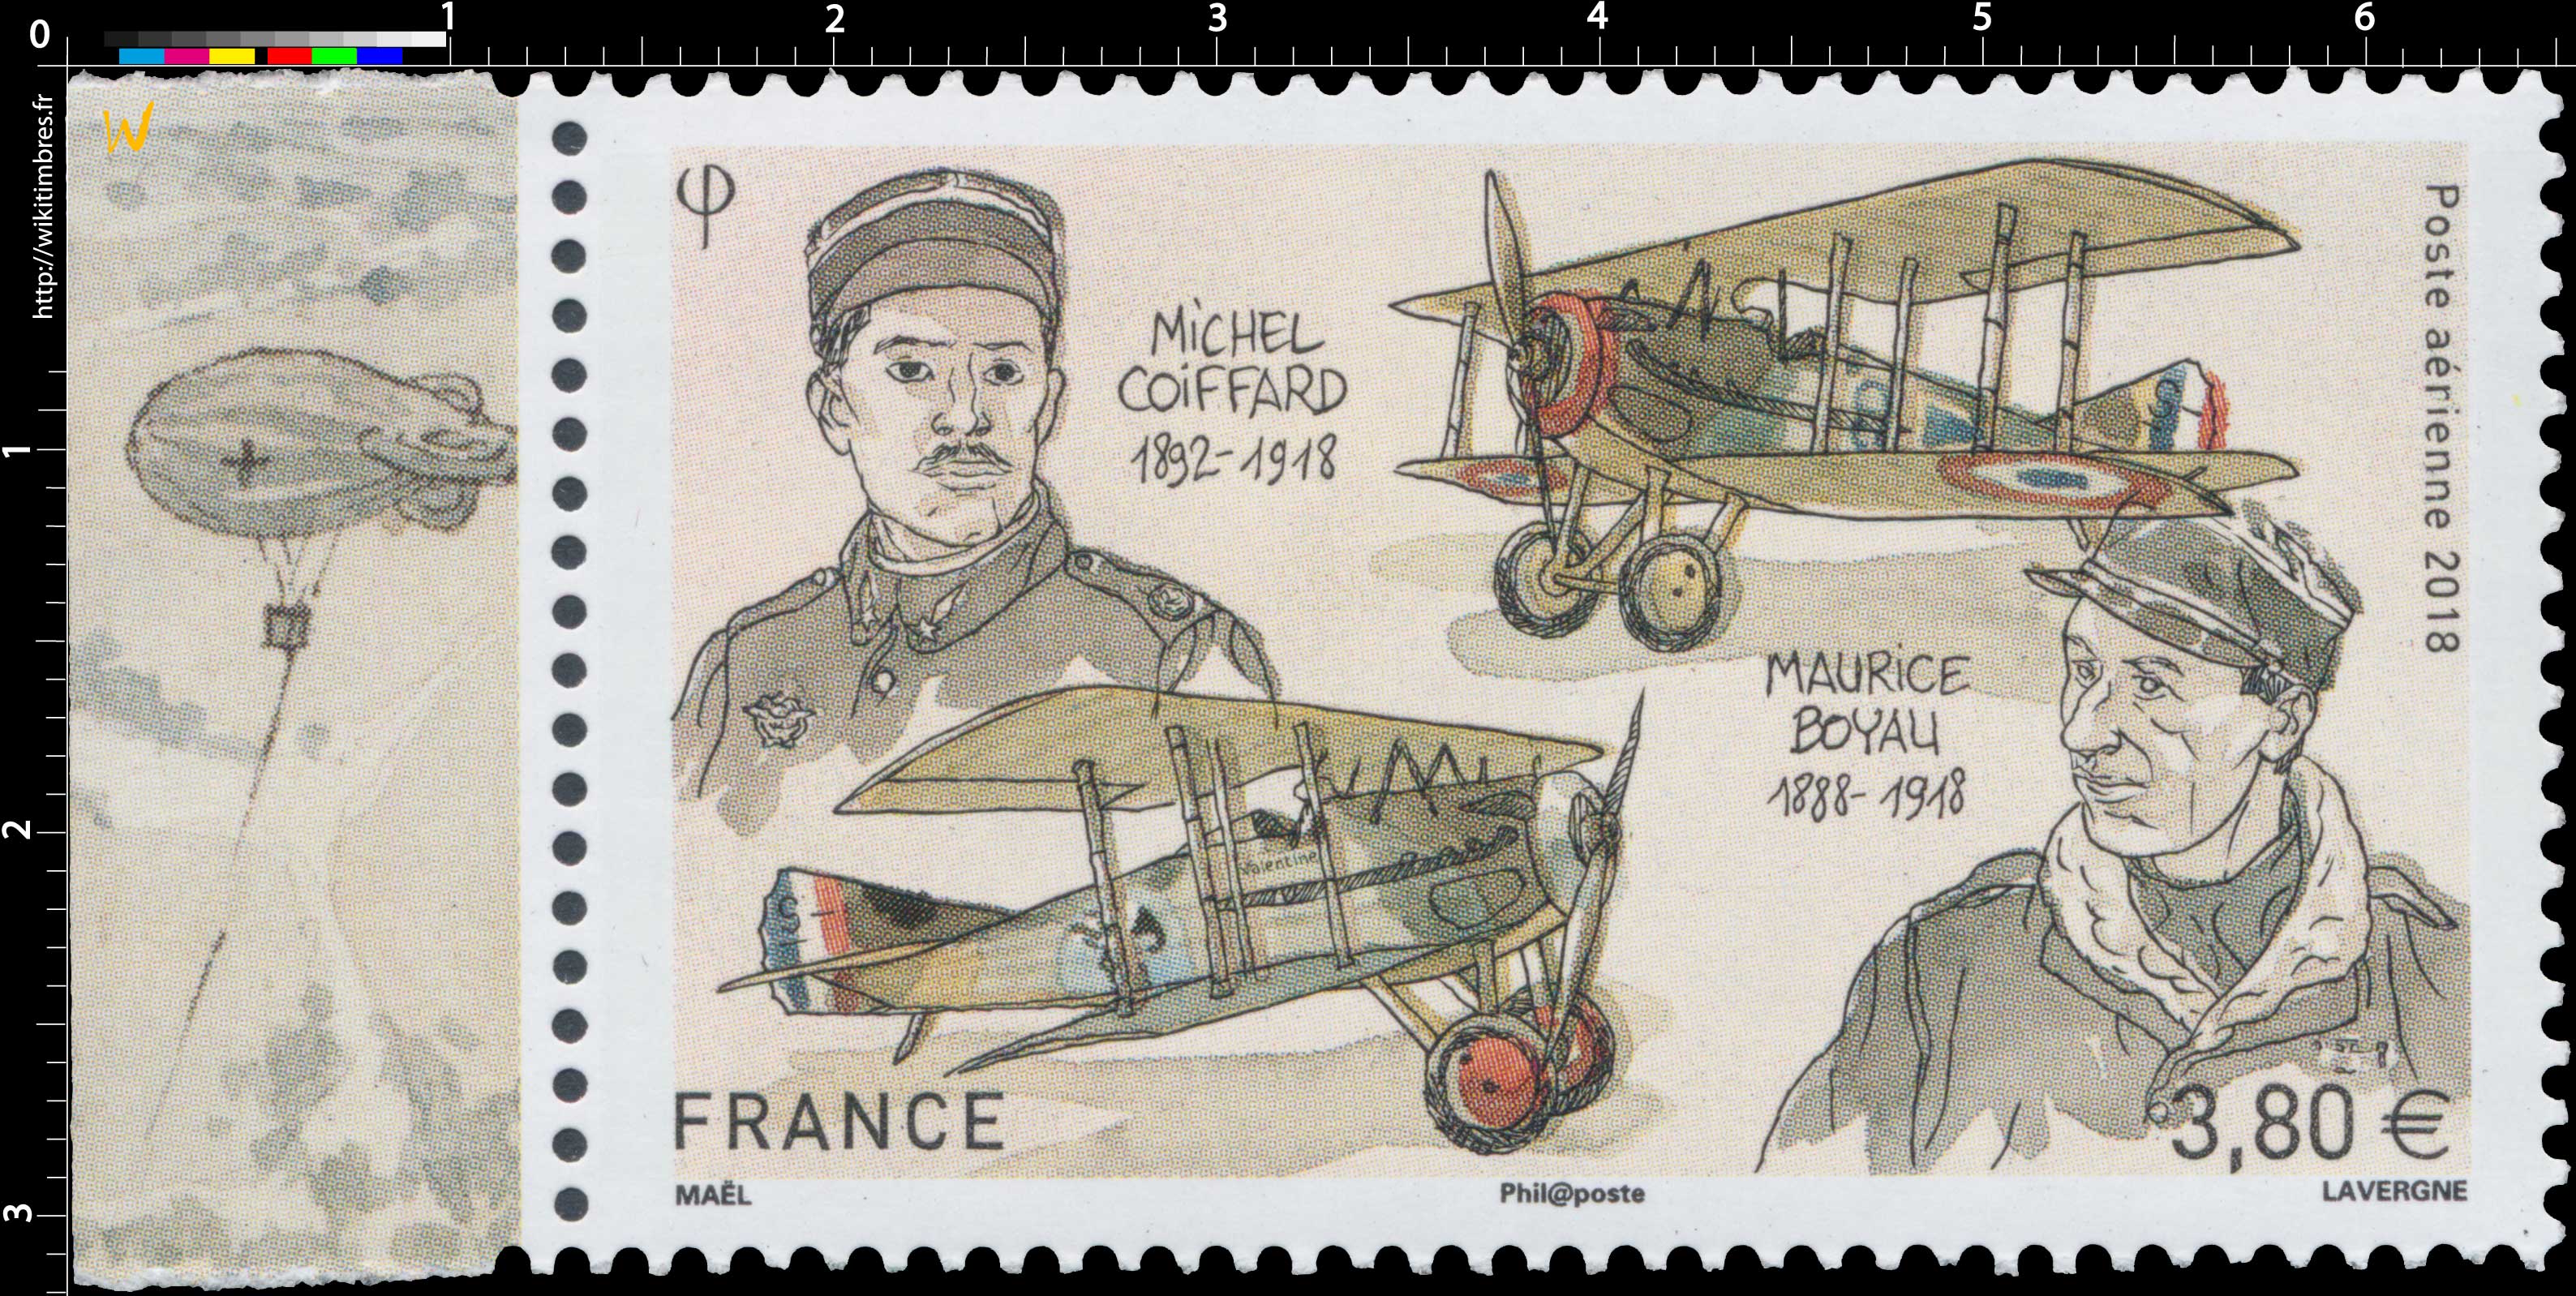 2018 Michel COIFFARD 1892-1918  –  Maurice BOYAU 1888-1918